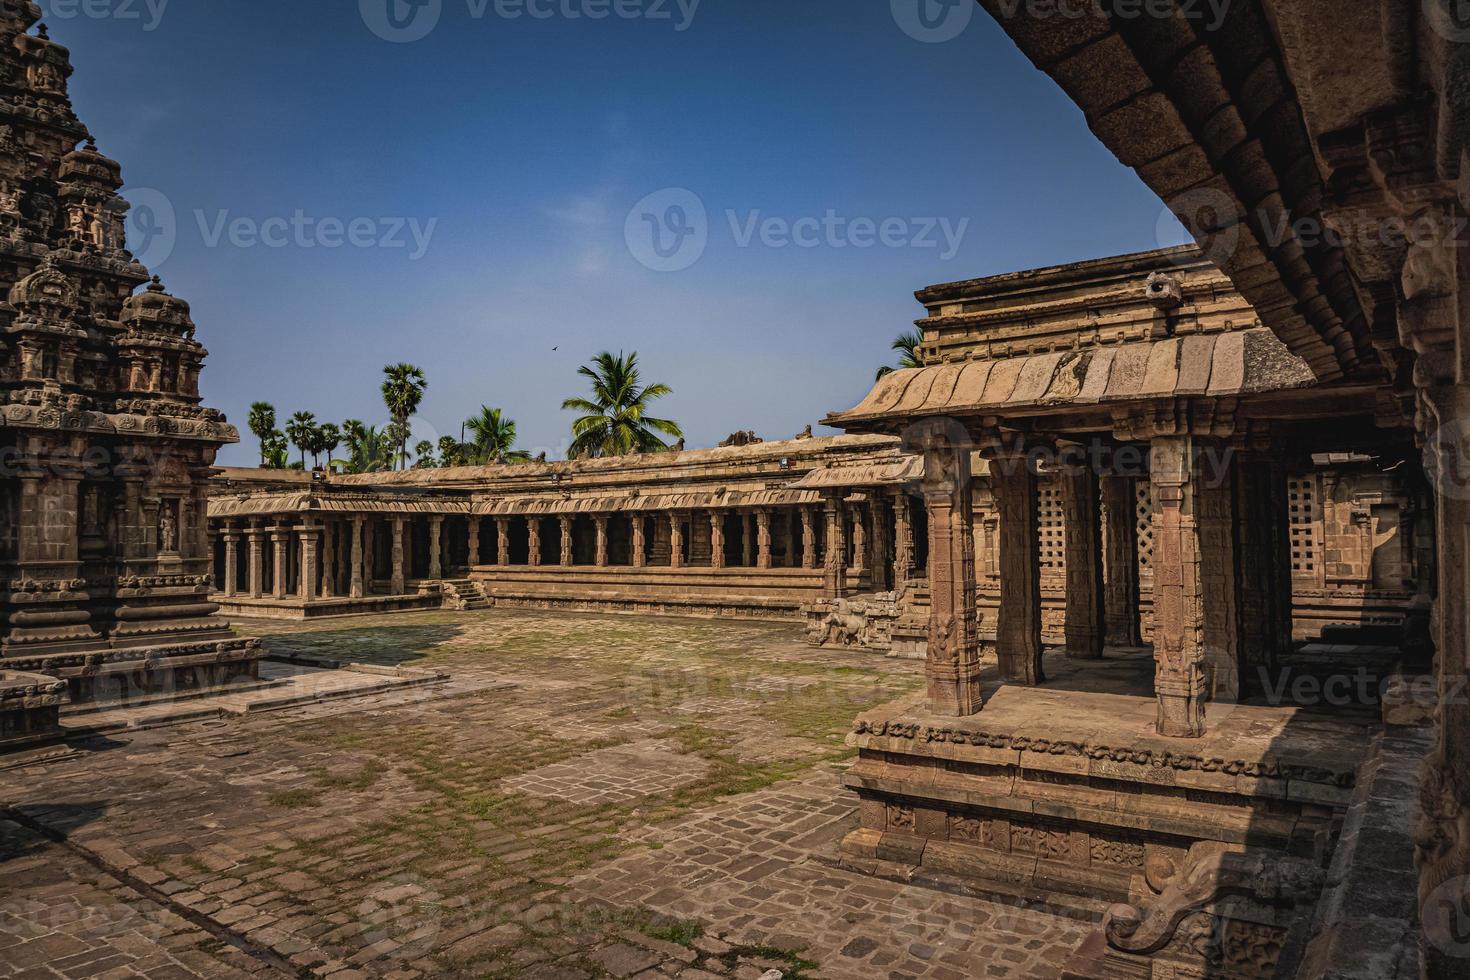 O templo shri airavatesvara é um templo hindu localizado em dharasuram, kumbakonam, tamil nadu. foi construído pelo imperador chola rajaraja-2. o templo dedicado a shiva. é um patrimônio mundial da unesco. foto